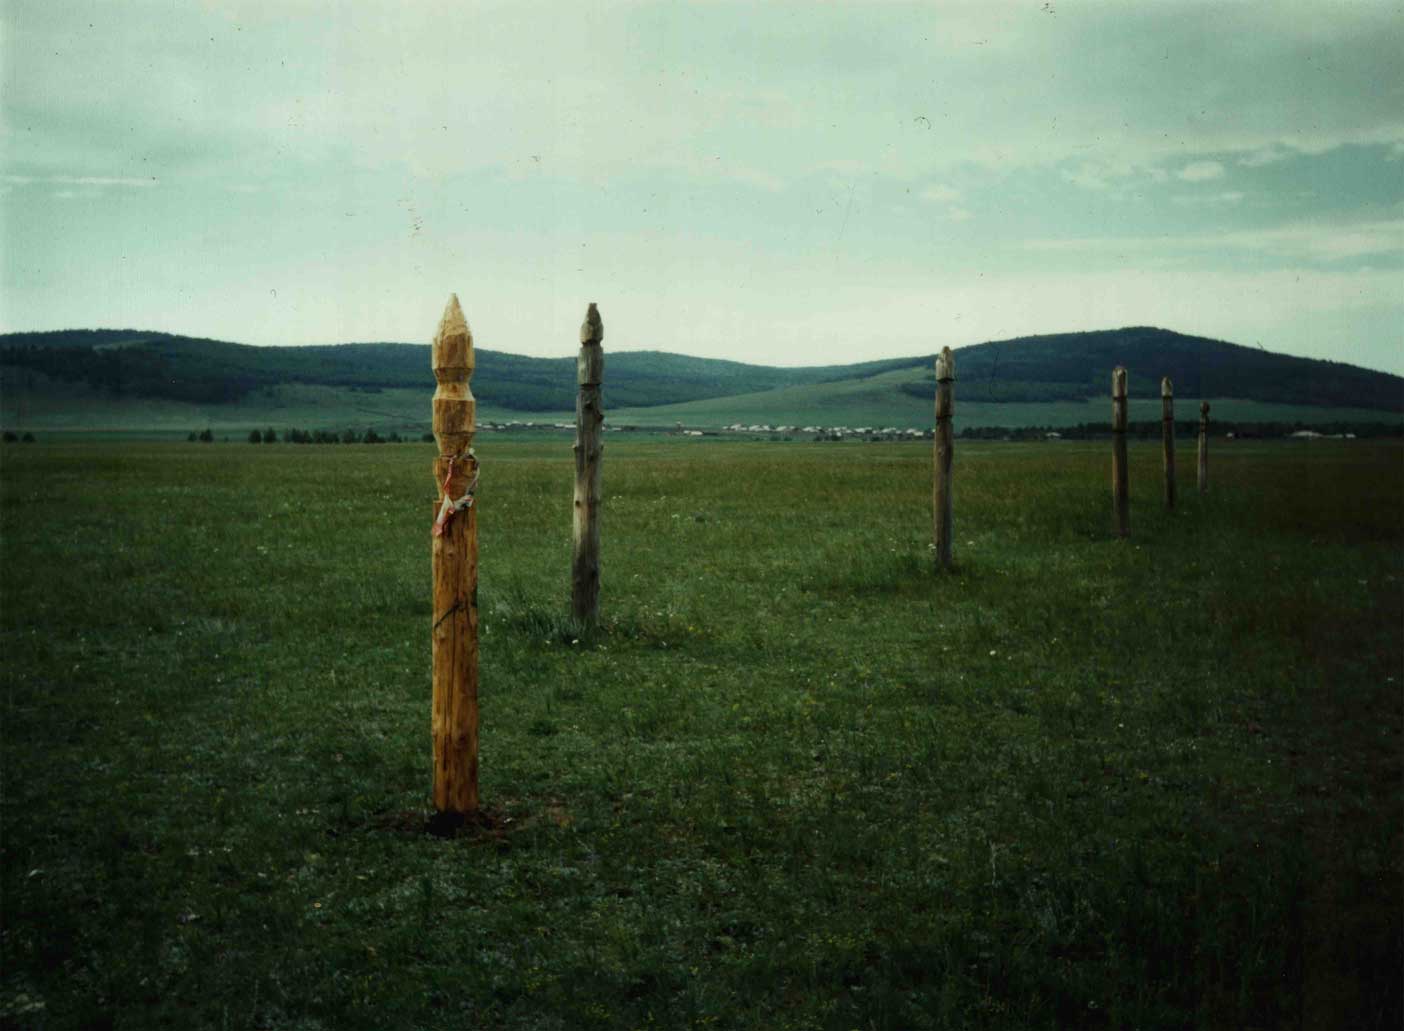 Szergék (lókikötő oszlopok) a nemzetségi szent hegy lábánál Nyugati-Burjátföldön 2000 nyarán. (Sántha István felvétele)